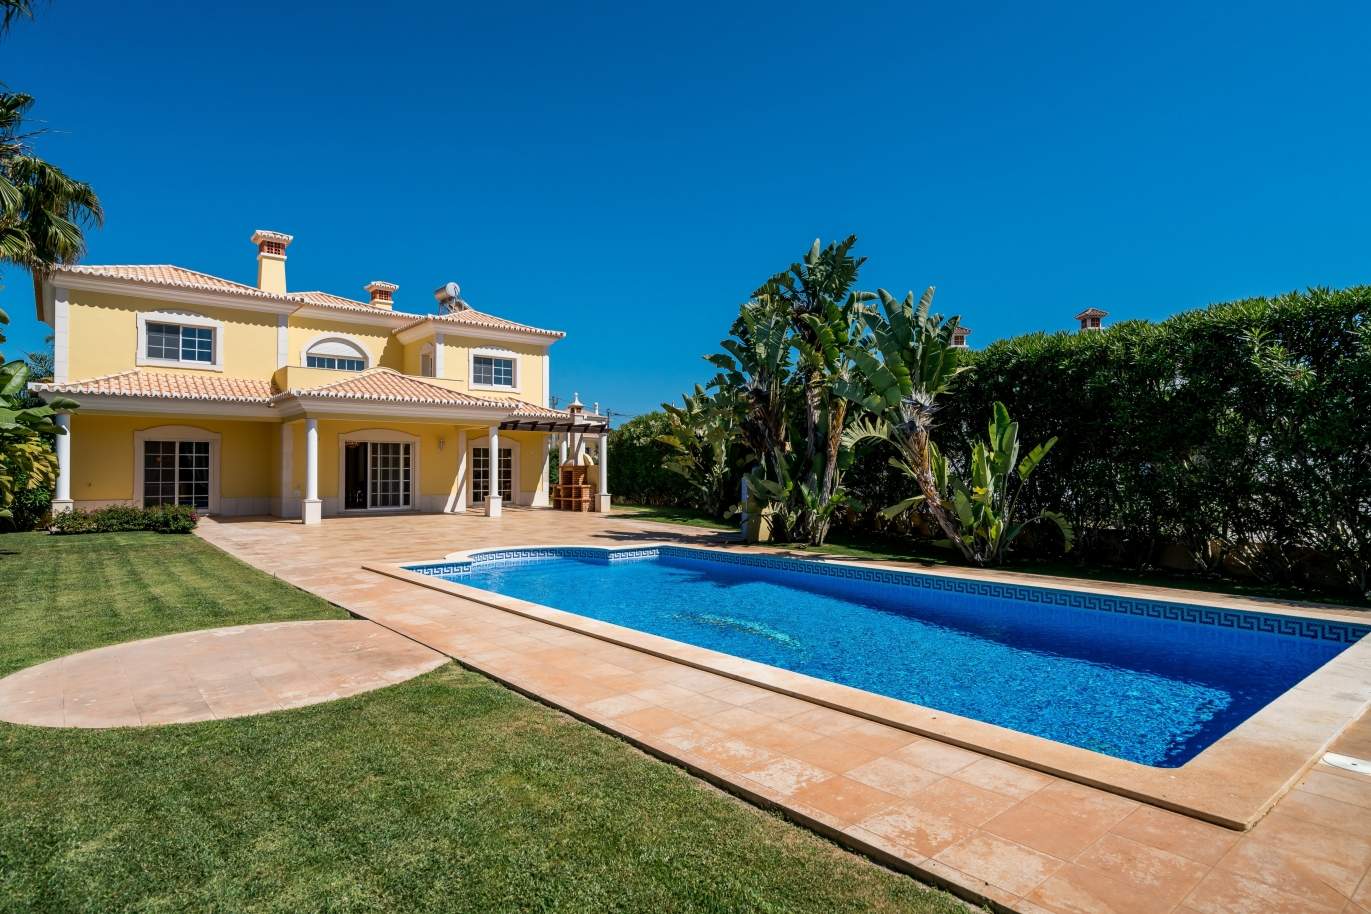 Venda de moradia com piscina em Quarteira, Algarve, Portugal_105136